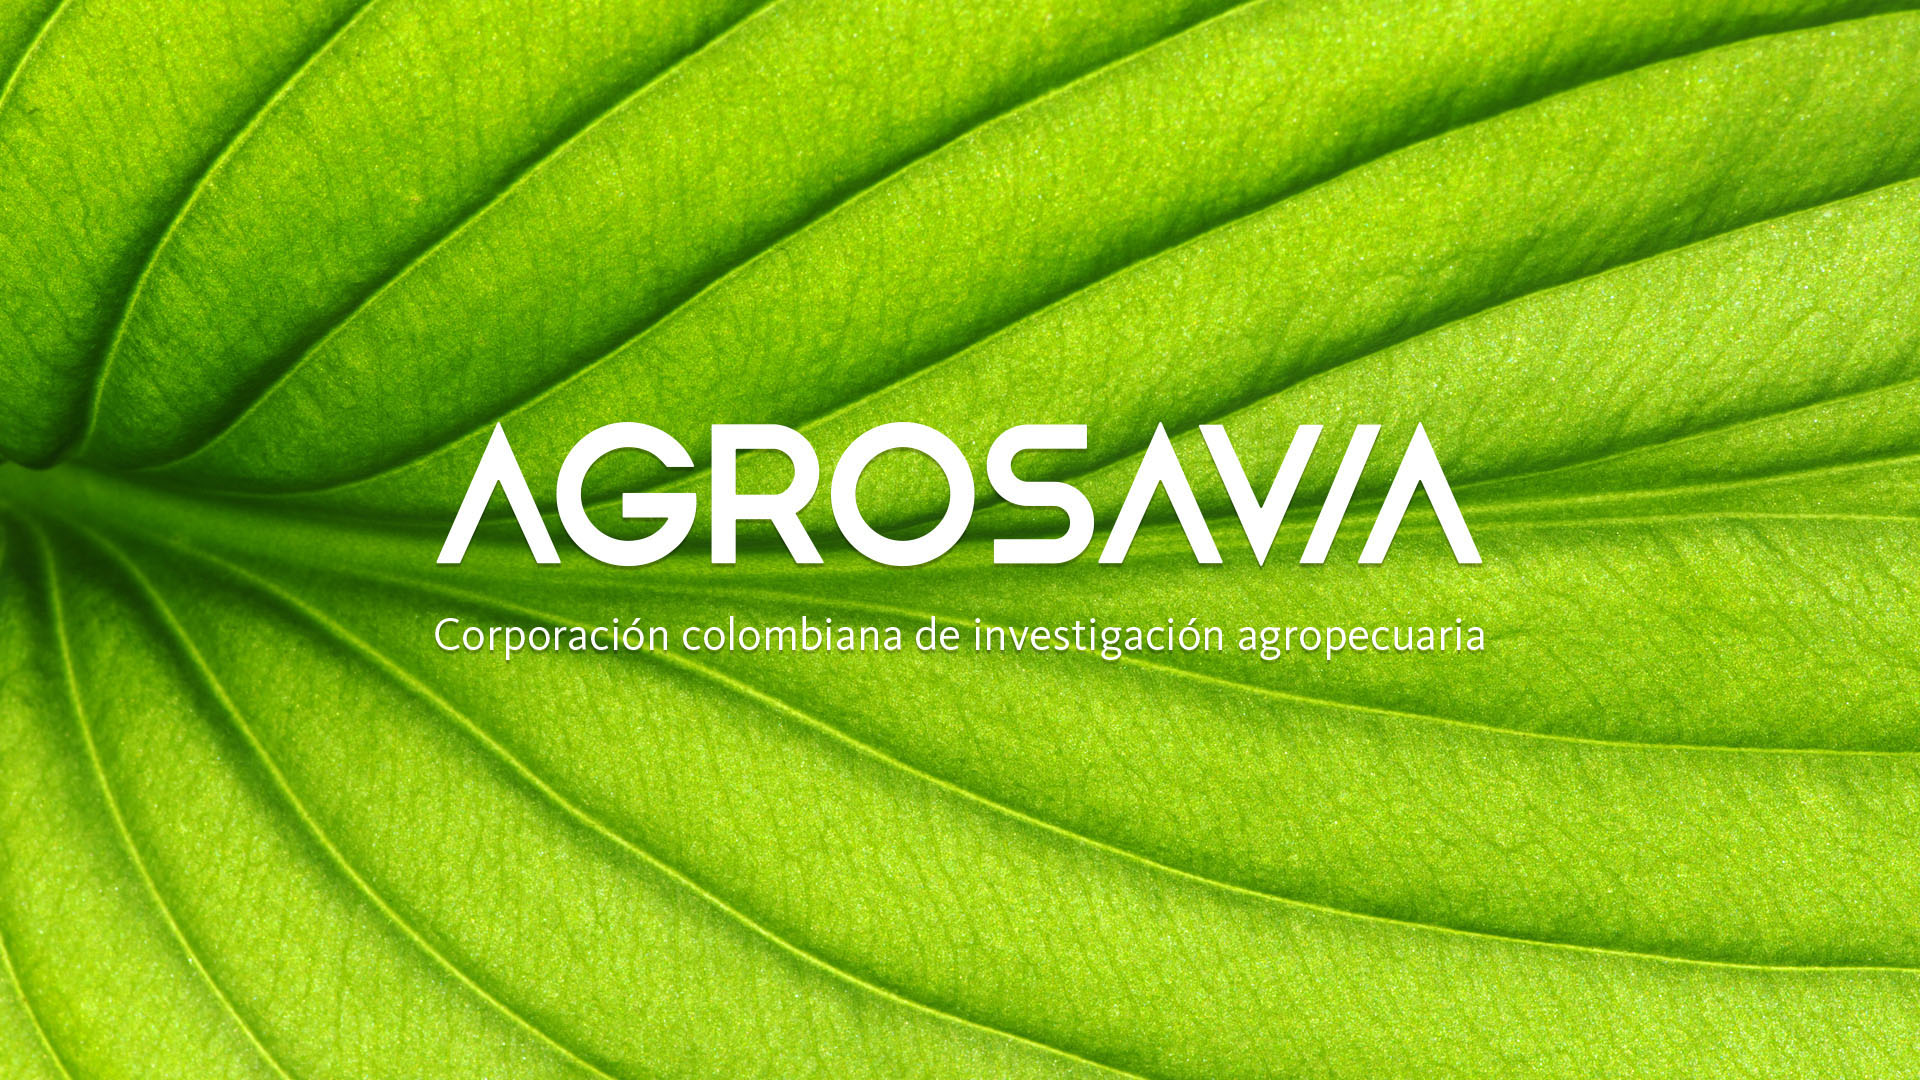 Diseño de Imagen corporativa. Re-Branding para la marca Agrosavia